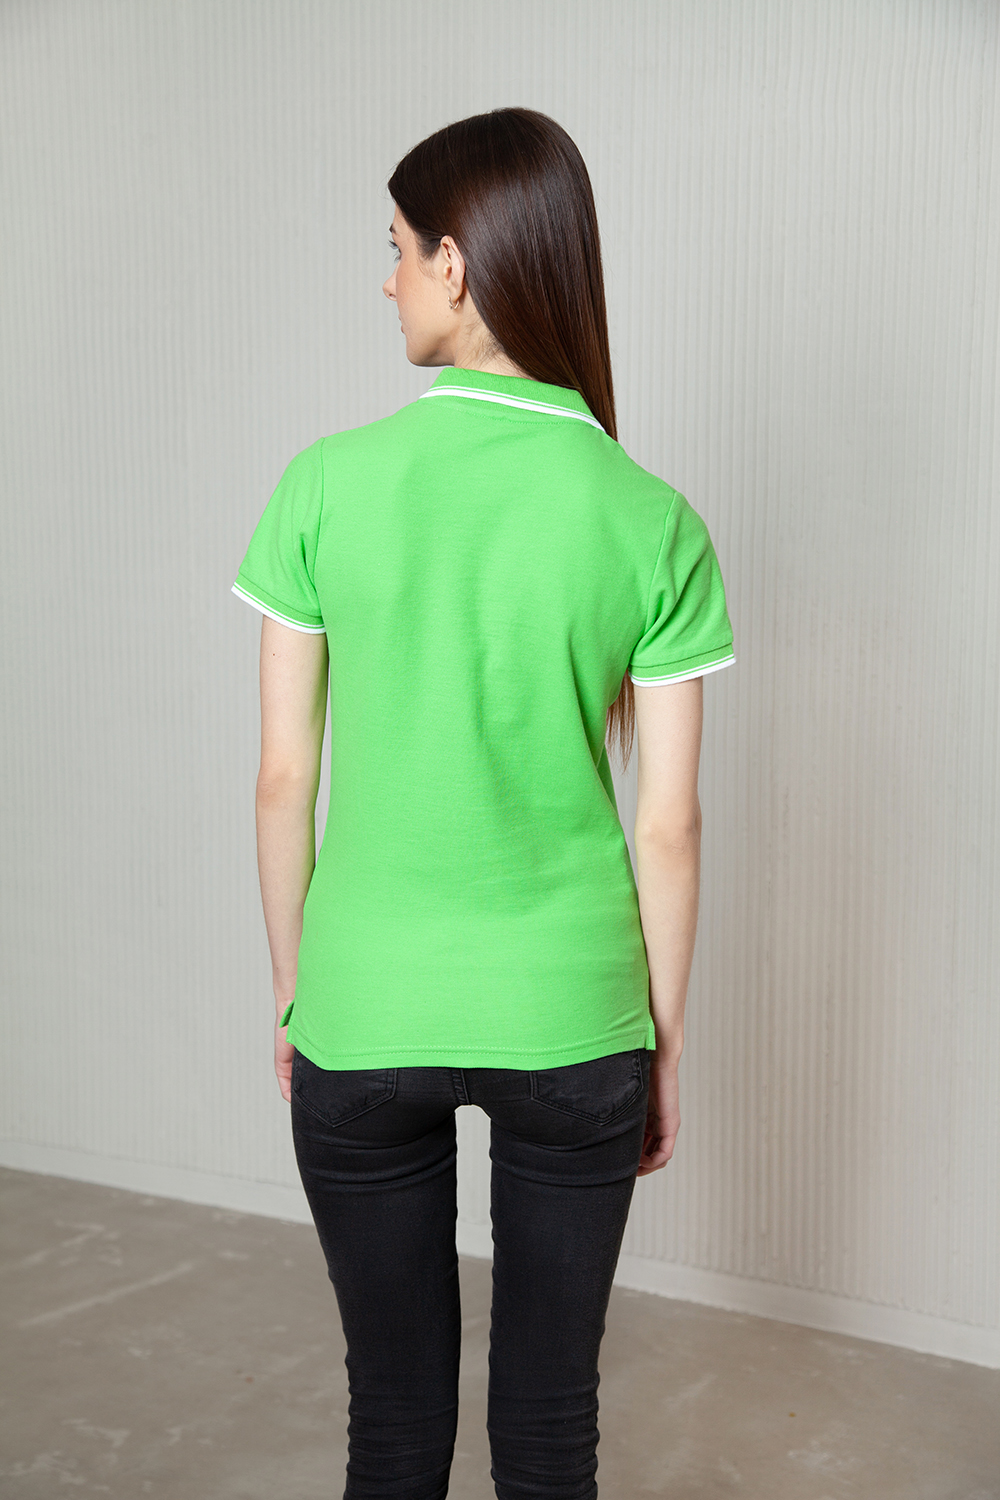 Рубашка поло  женская с окантовкой STAN хлопок/полиэстер 185, 04BK, Т-синий (46) (42/XS)